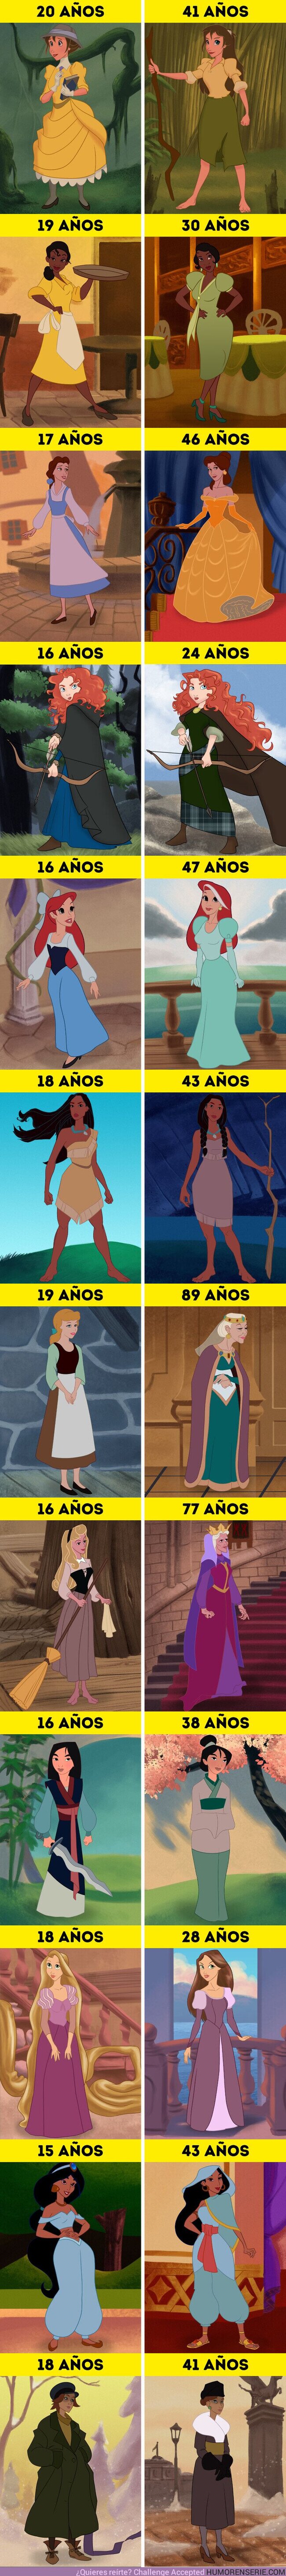 59289 - GALERÍA: Cómo se verían 12 princesas de Disney años después del final de sus películas (Cenicienta tendría 89 años)